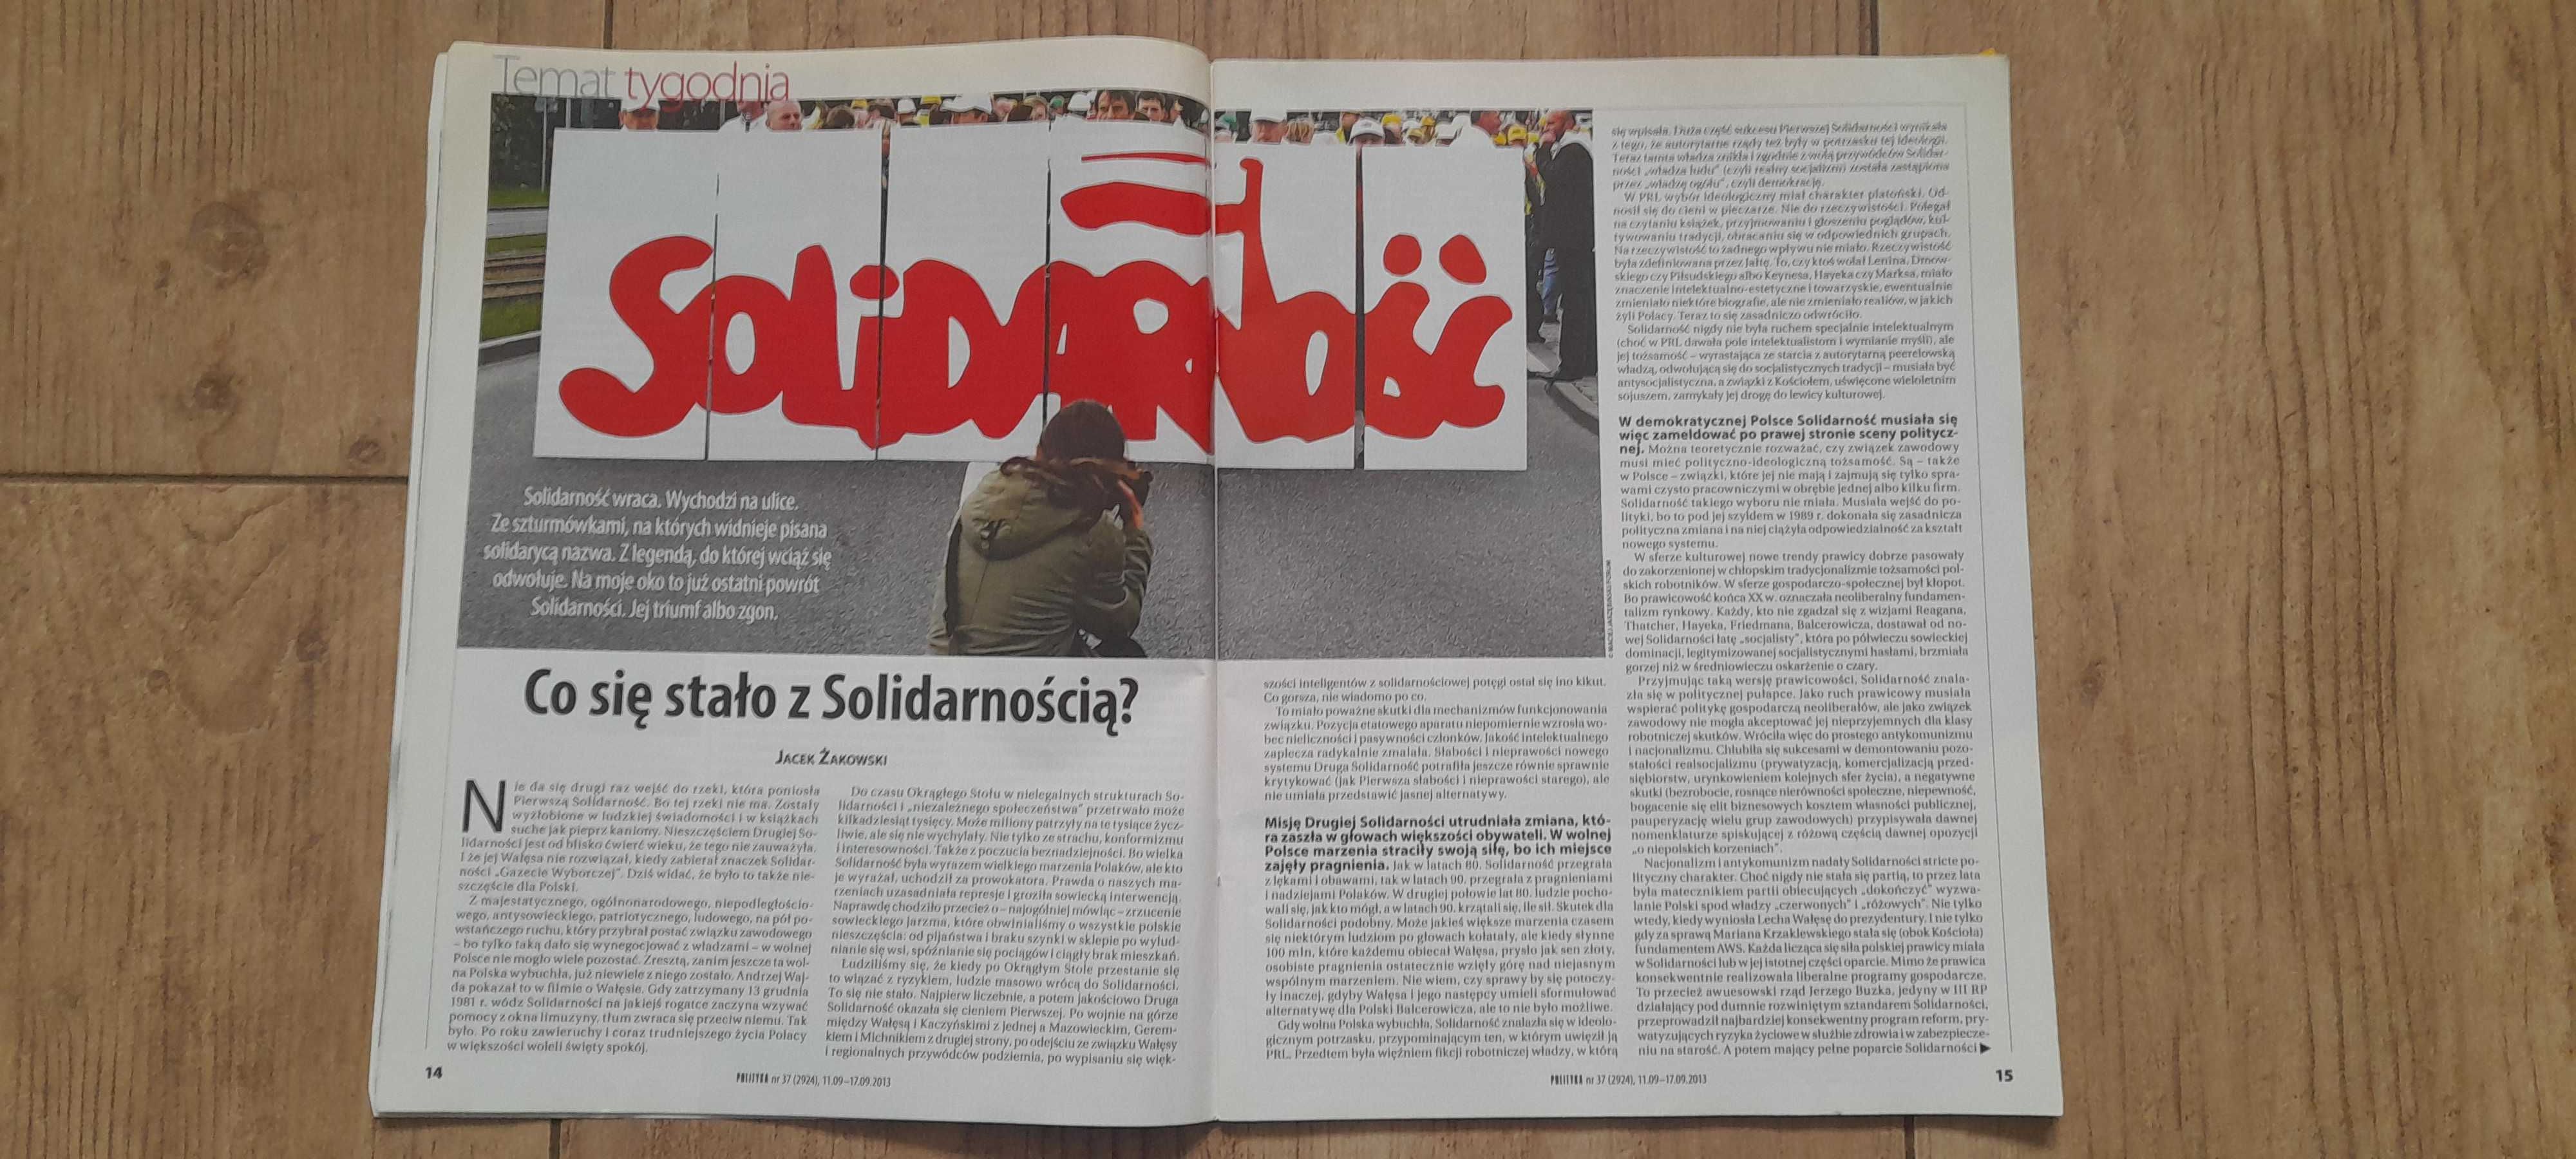 Tygodnik "Polityka" - nr 37 (2924) z 11.09-17.09.2013 roku